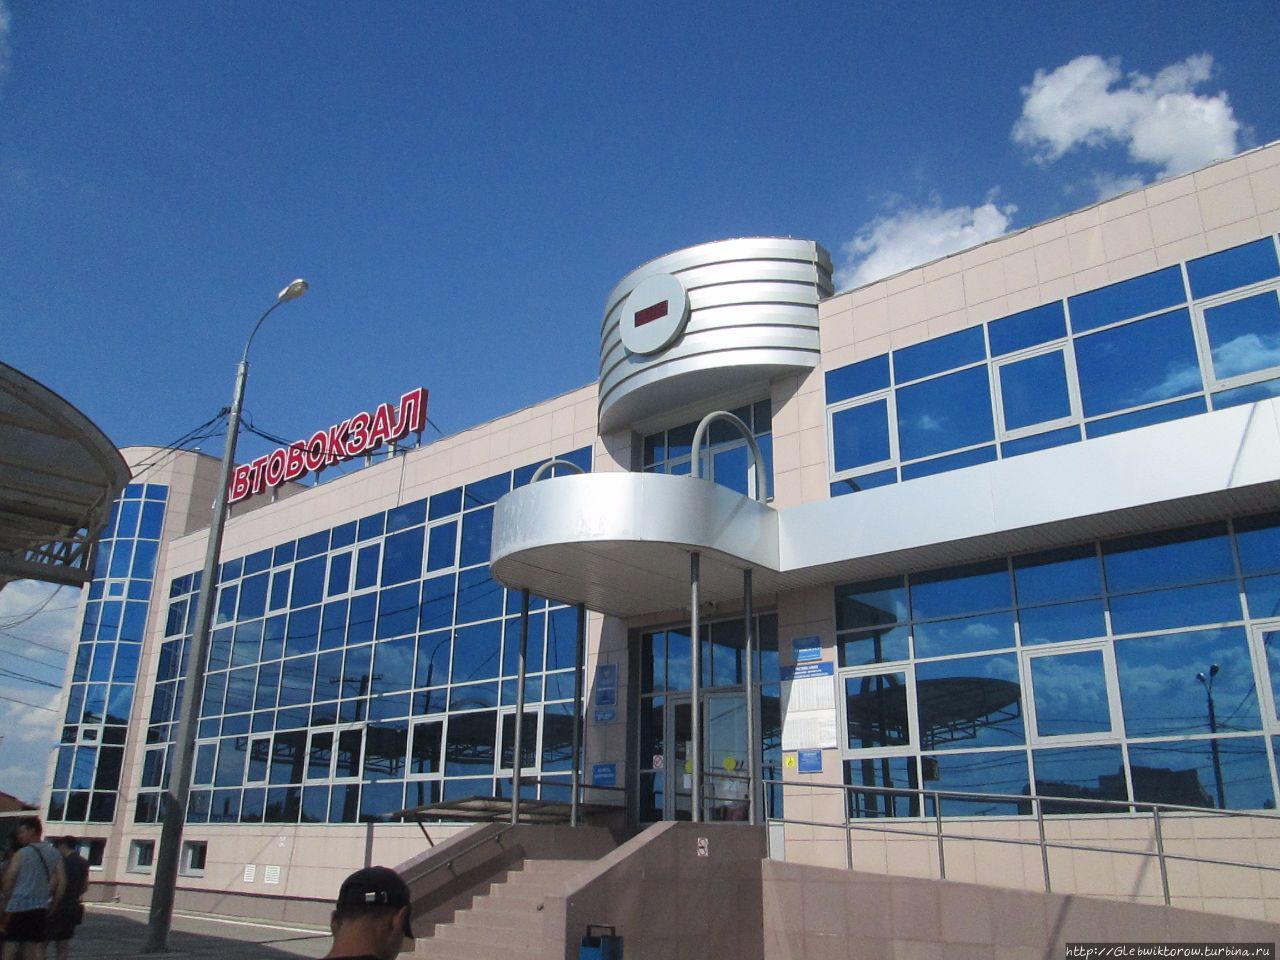 Цивильный и полезный автовокзал рядом с ж/д вокзалом Астрахань, Россия